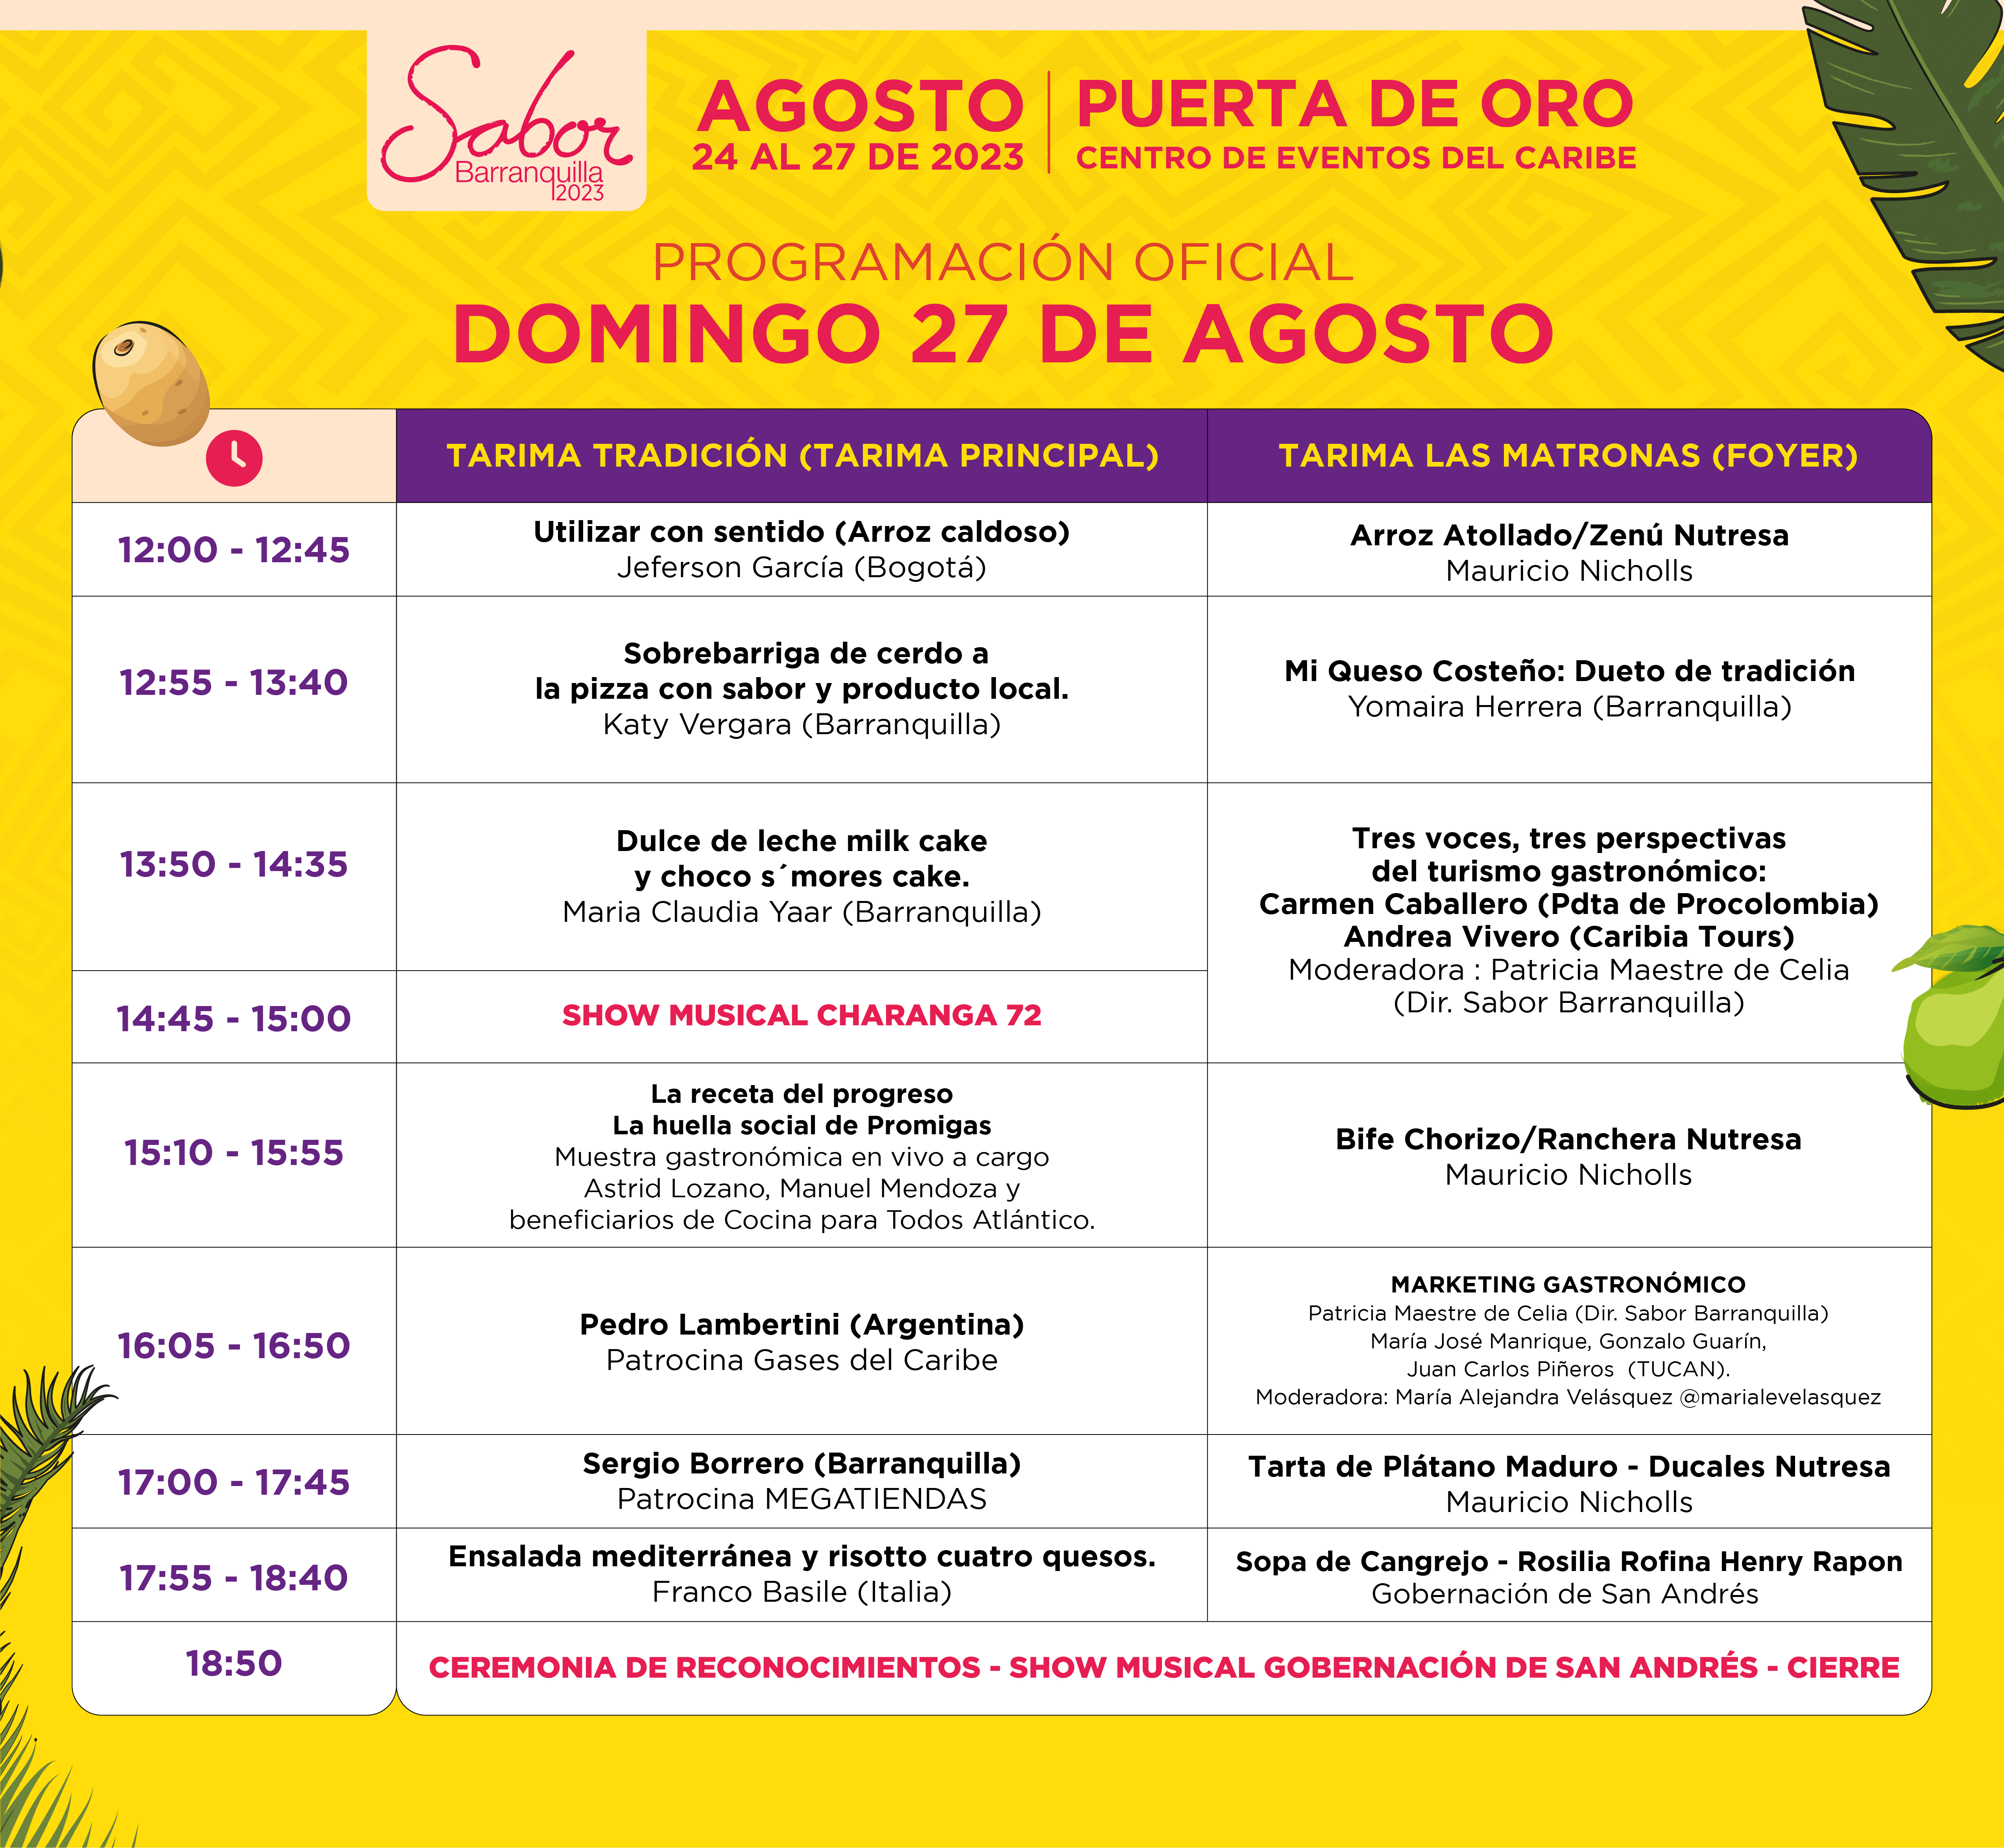 Agenda de Sabor Barranquilla este domingo.